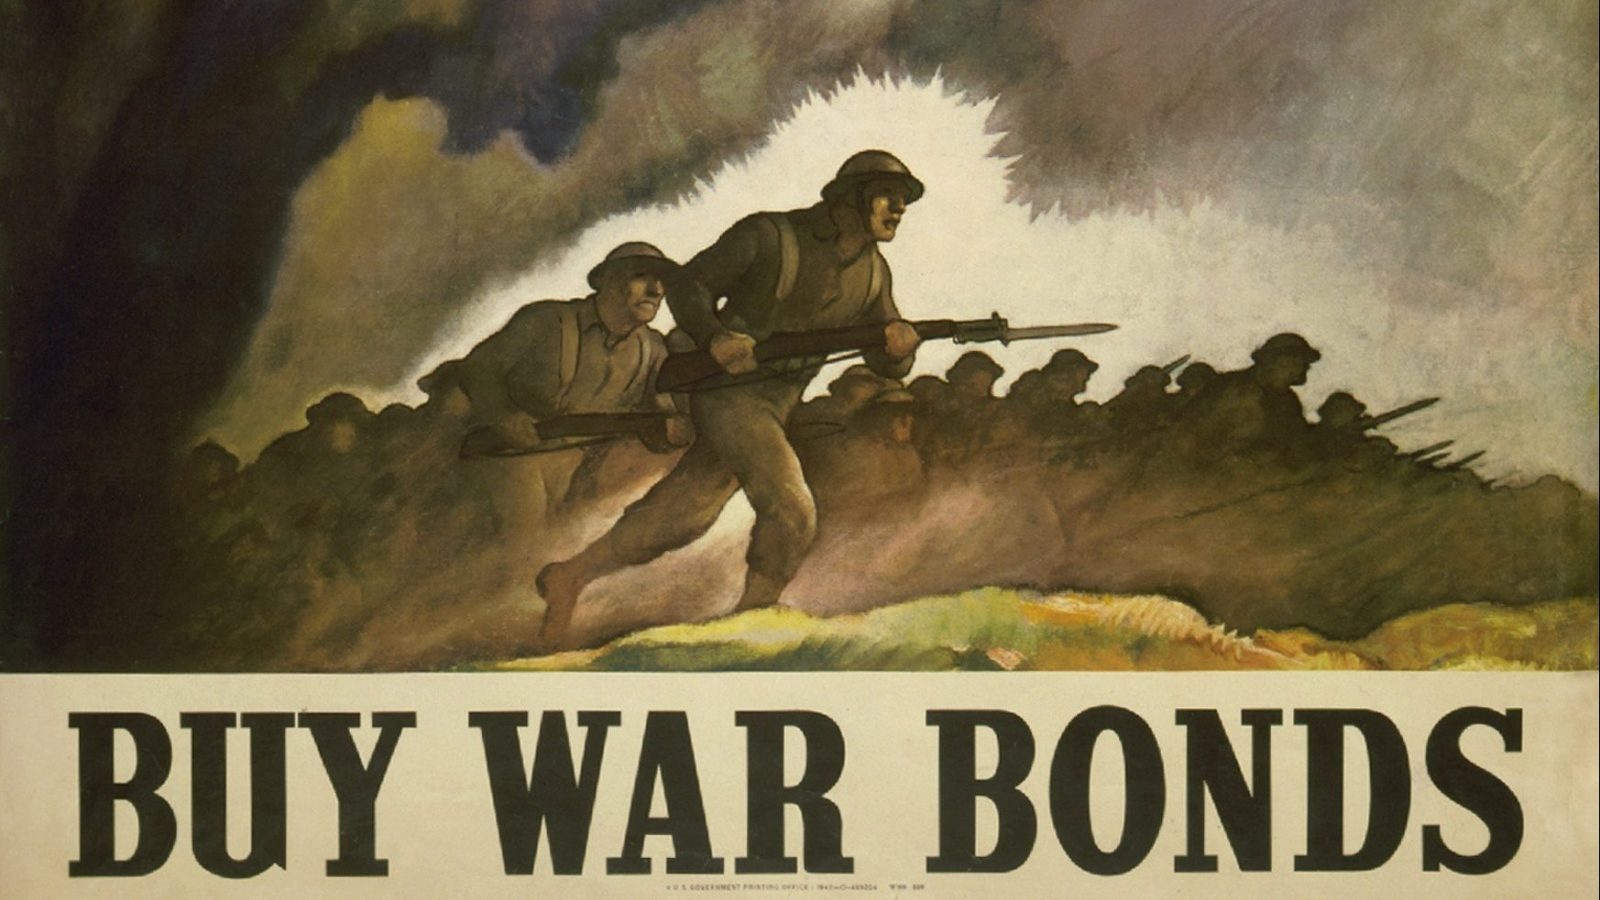 A poster advertising war bonds.